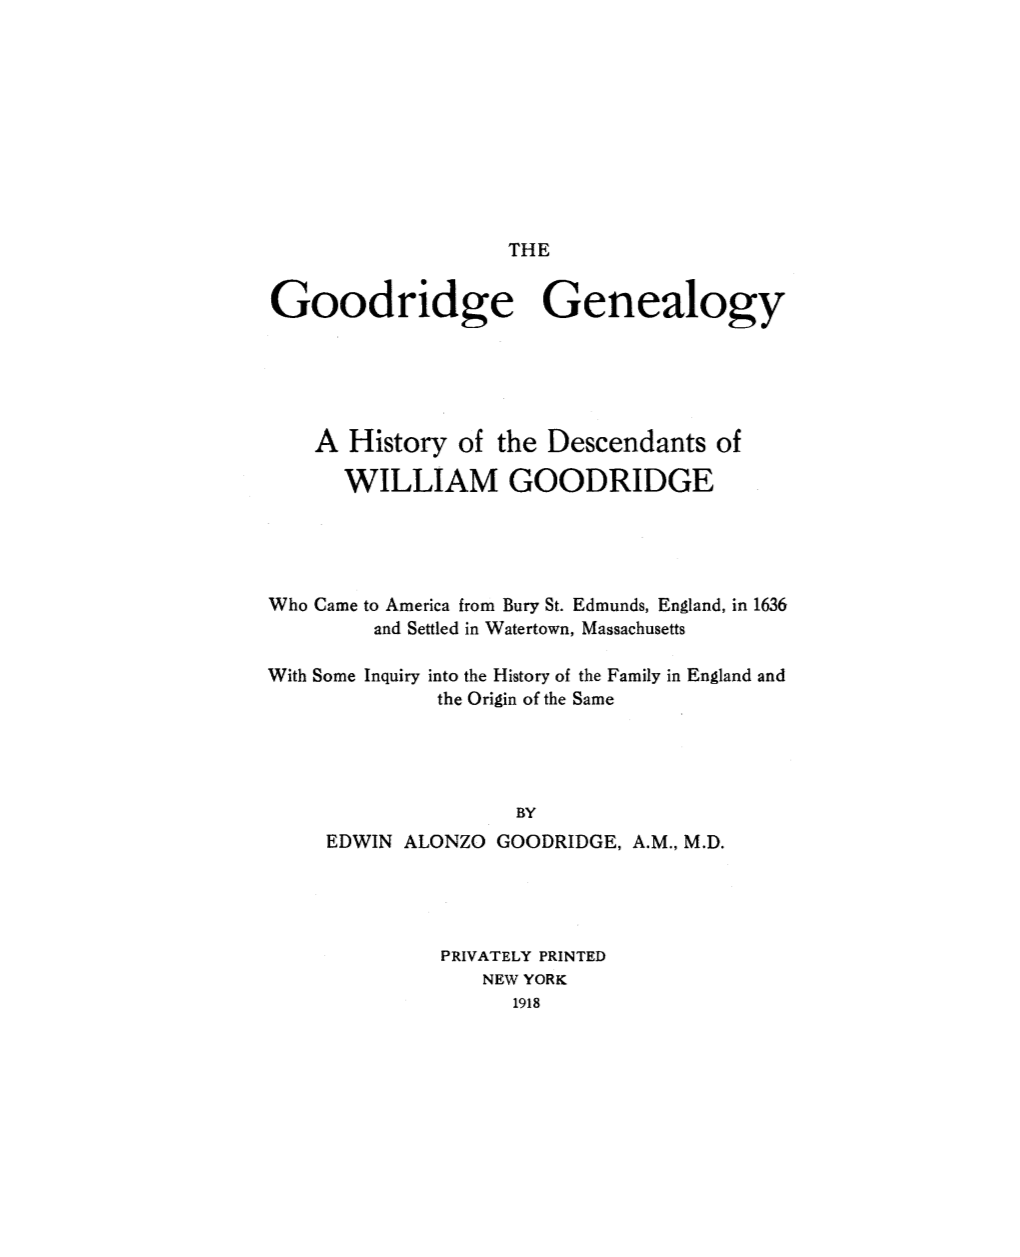 Goodridge Genealogy